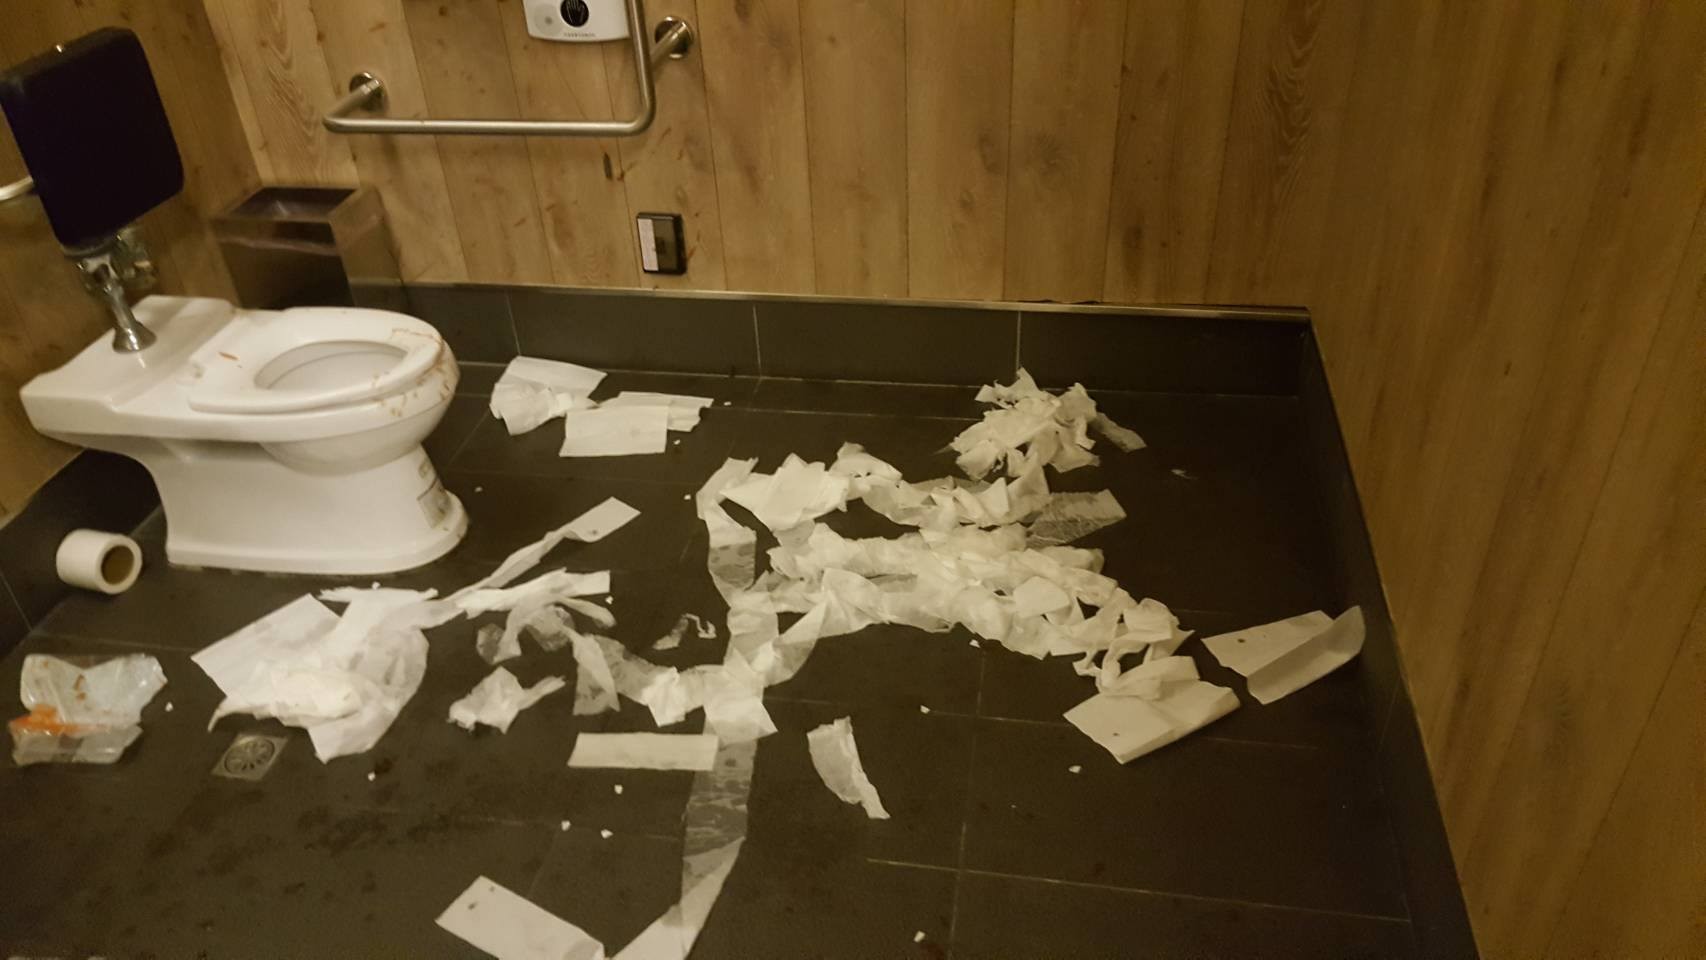 影城厕所满地卫生纸…屎尿塞「卷筒」 打扫阿